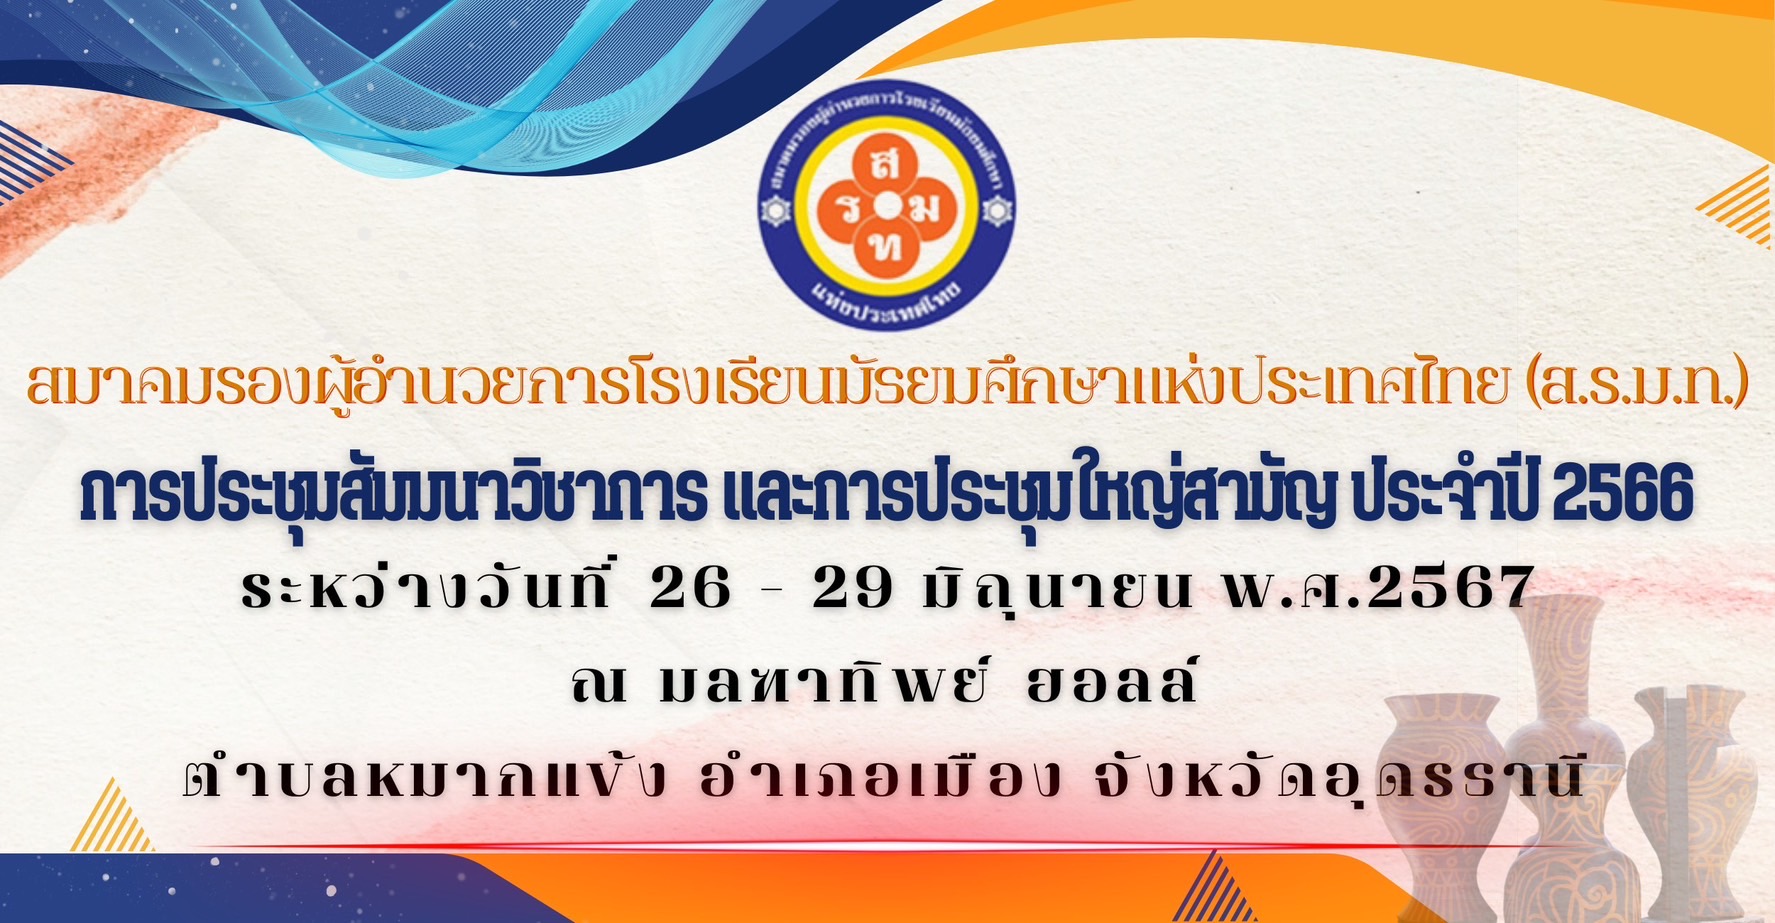 สมาคมรองผู้อำนวยการโรงเรียนมัธยมศึกษาแห่งประเทศไทย ได้กำหนดจัดการประชุม สัมมนาวิชาการและประชุมใหญ่สามัญ ประจำปี 2566 ขึ้นระหว่างวันที่  26 – 29 มิถุนายน พ.ศ.2567  ณ มลฑาทิพย์ฮอลล์ ตำบลหมากแข้ง อำเภอเมือง จังหวัดอุดรธานี